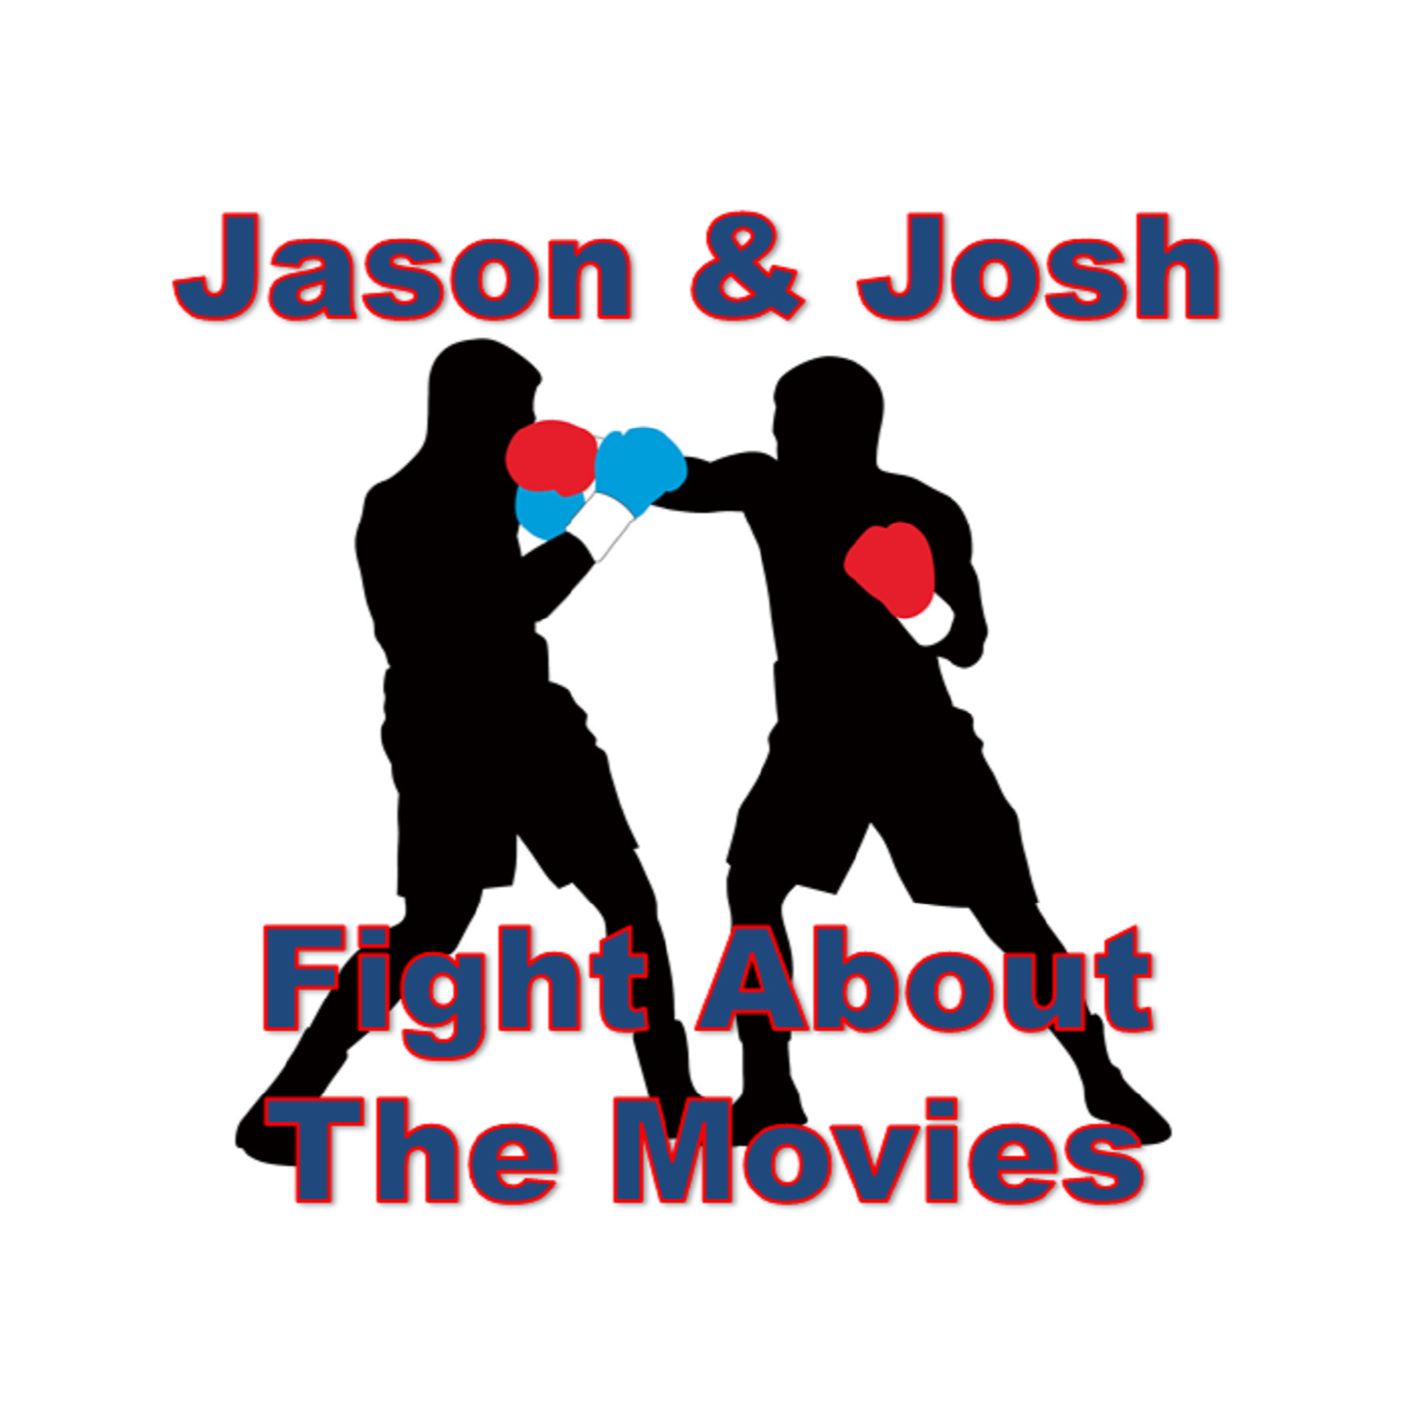 Jason & Josh Fight About the Movies